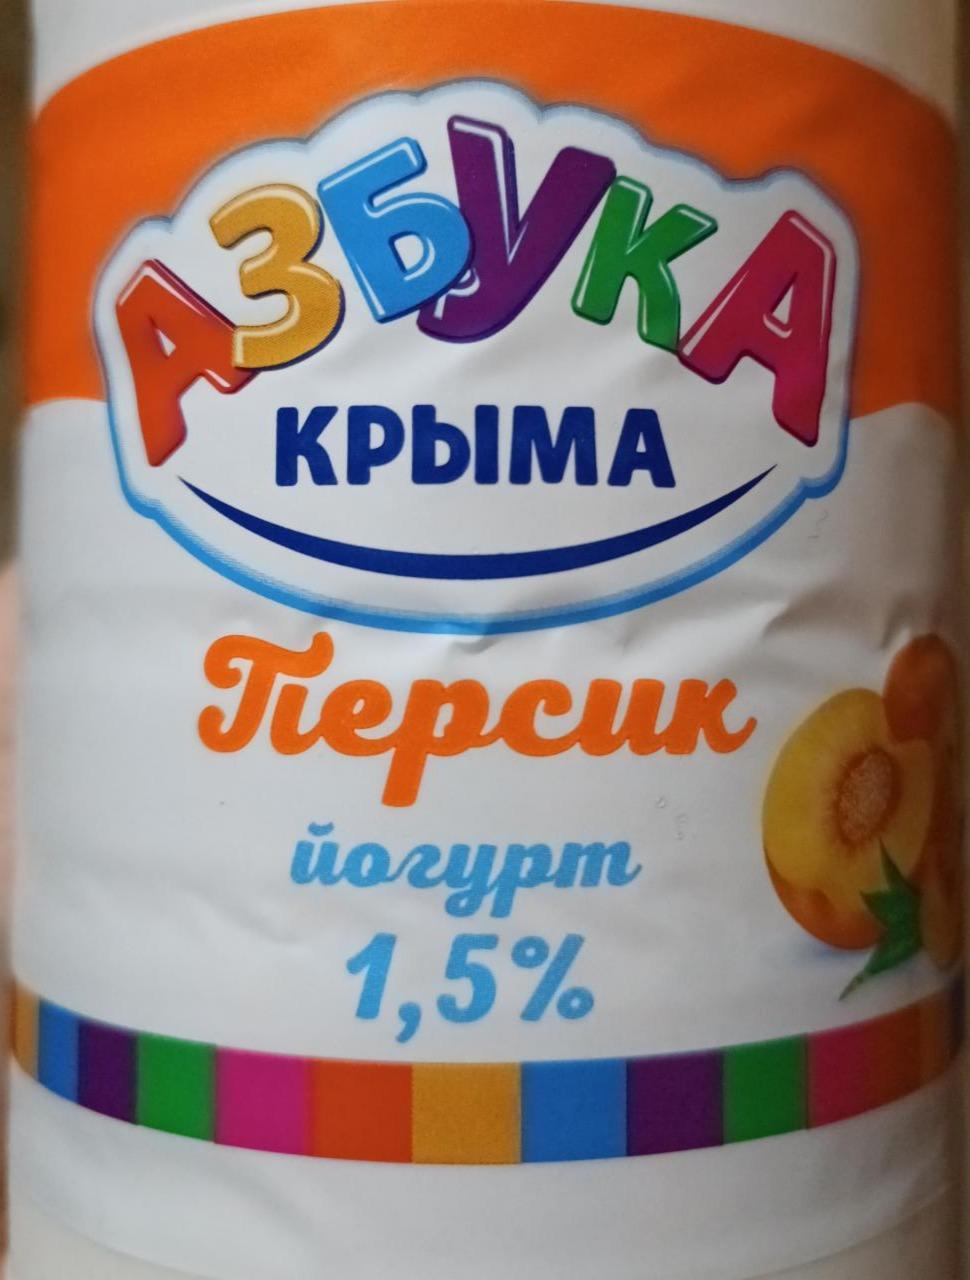 Фото - Йогурт питьевой 1.5% персик Азбука крыма